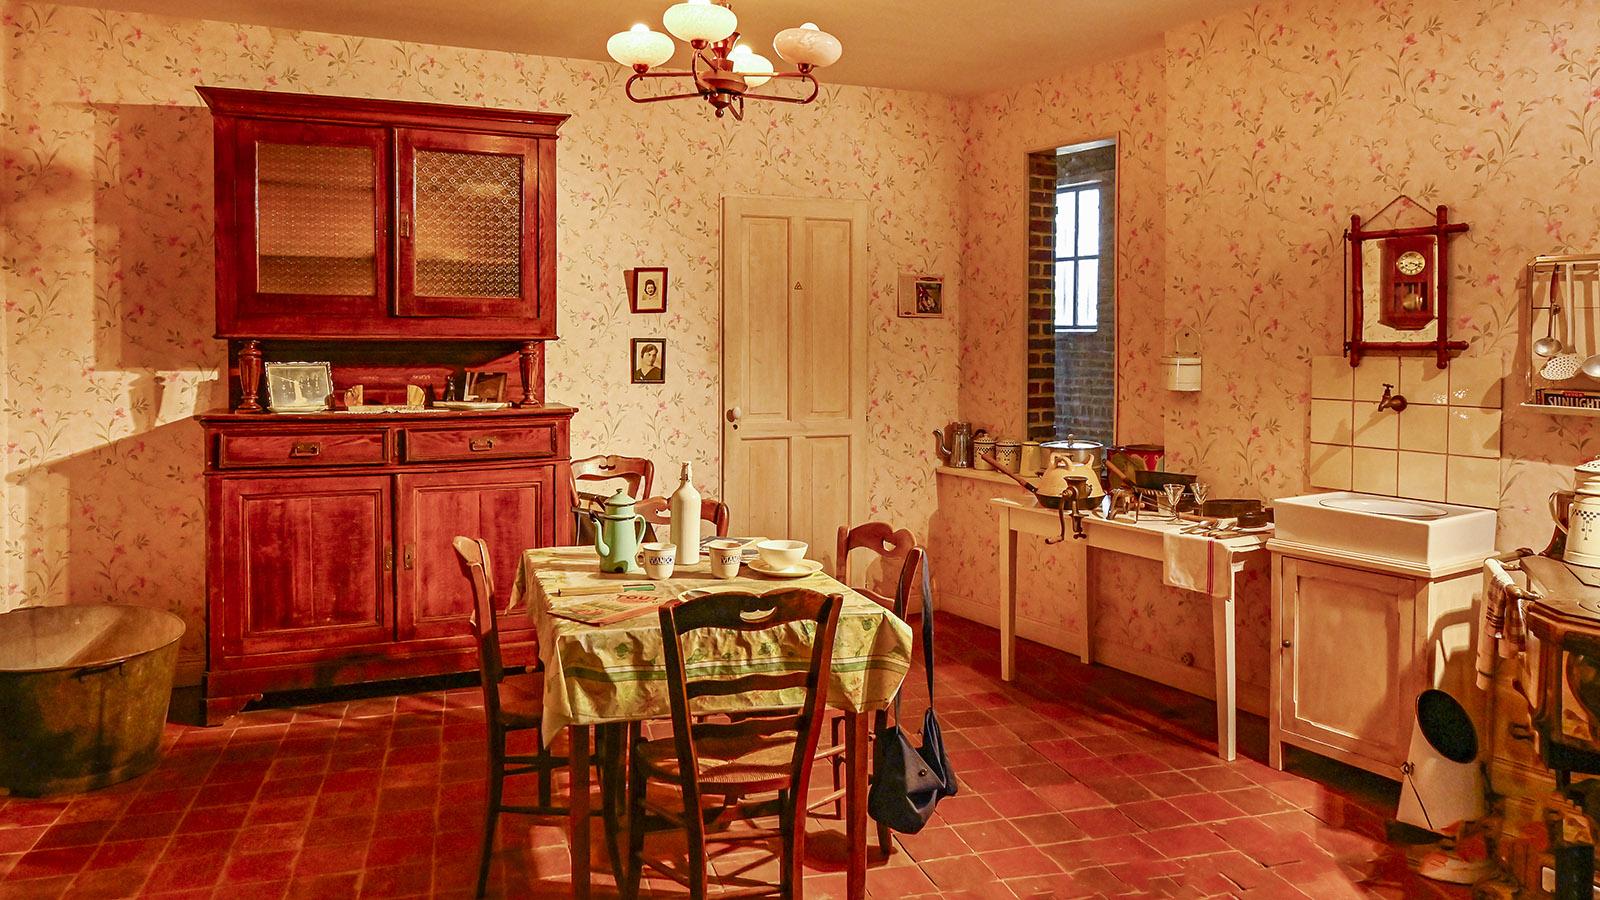 Die Wohnküche einer Bergmannsfamilie. Foto: Hilke Maunder